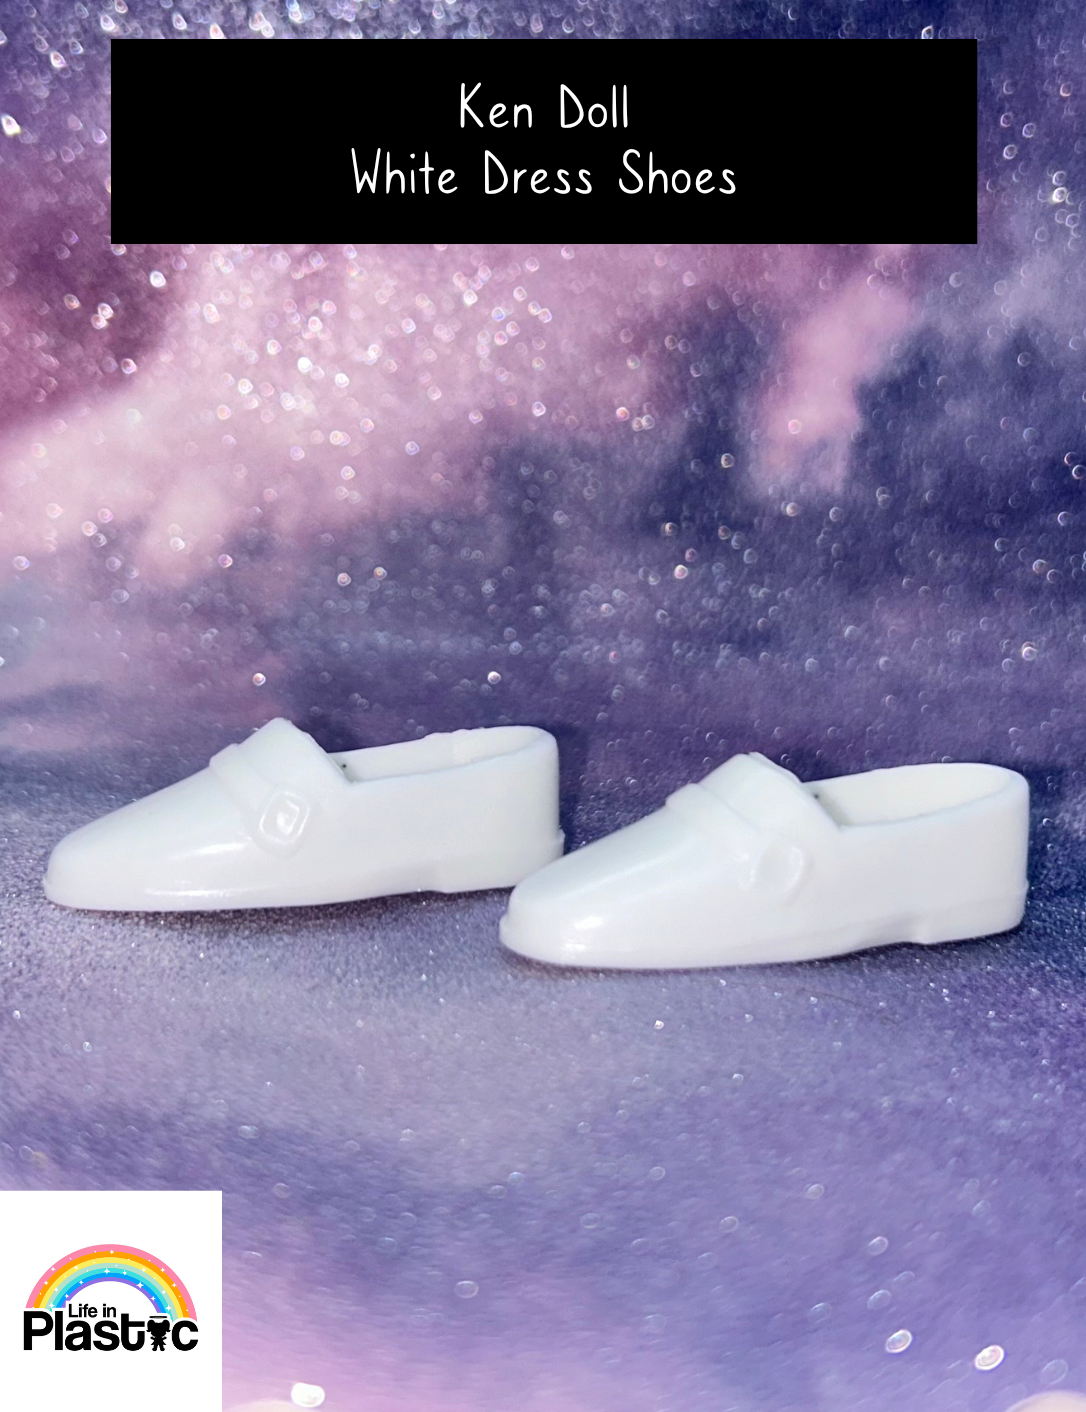 Ken Doll White Dress Shoes